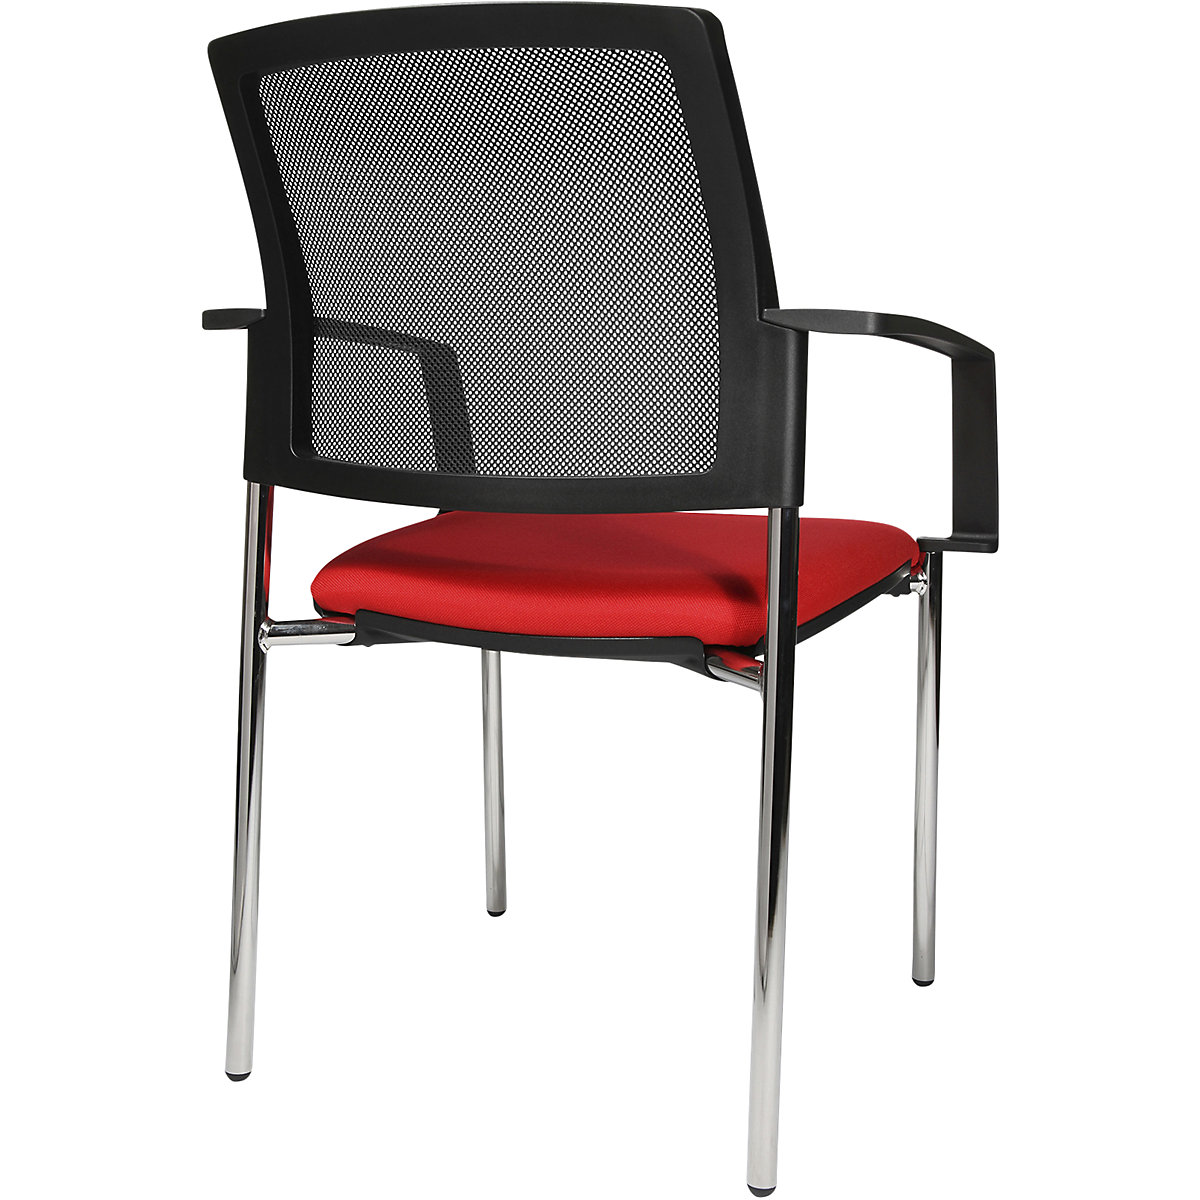 Složiva stolica s mrežastim naslonom – Topstar (Prikaz proizvoda 7)